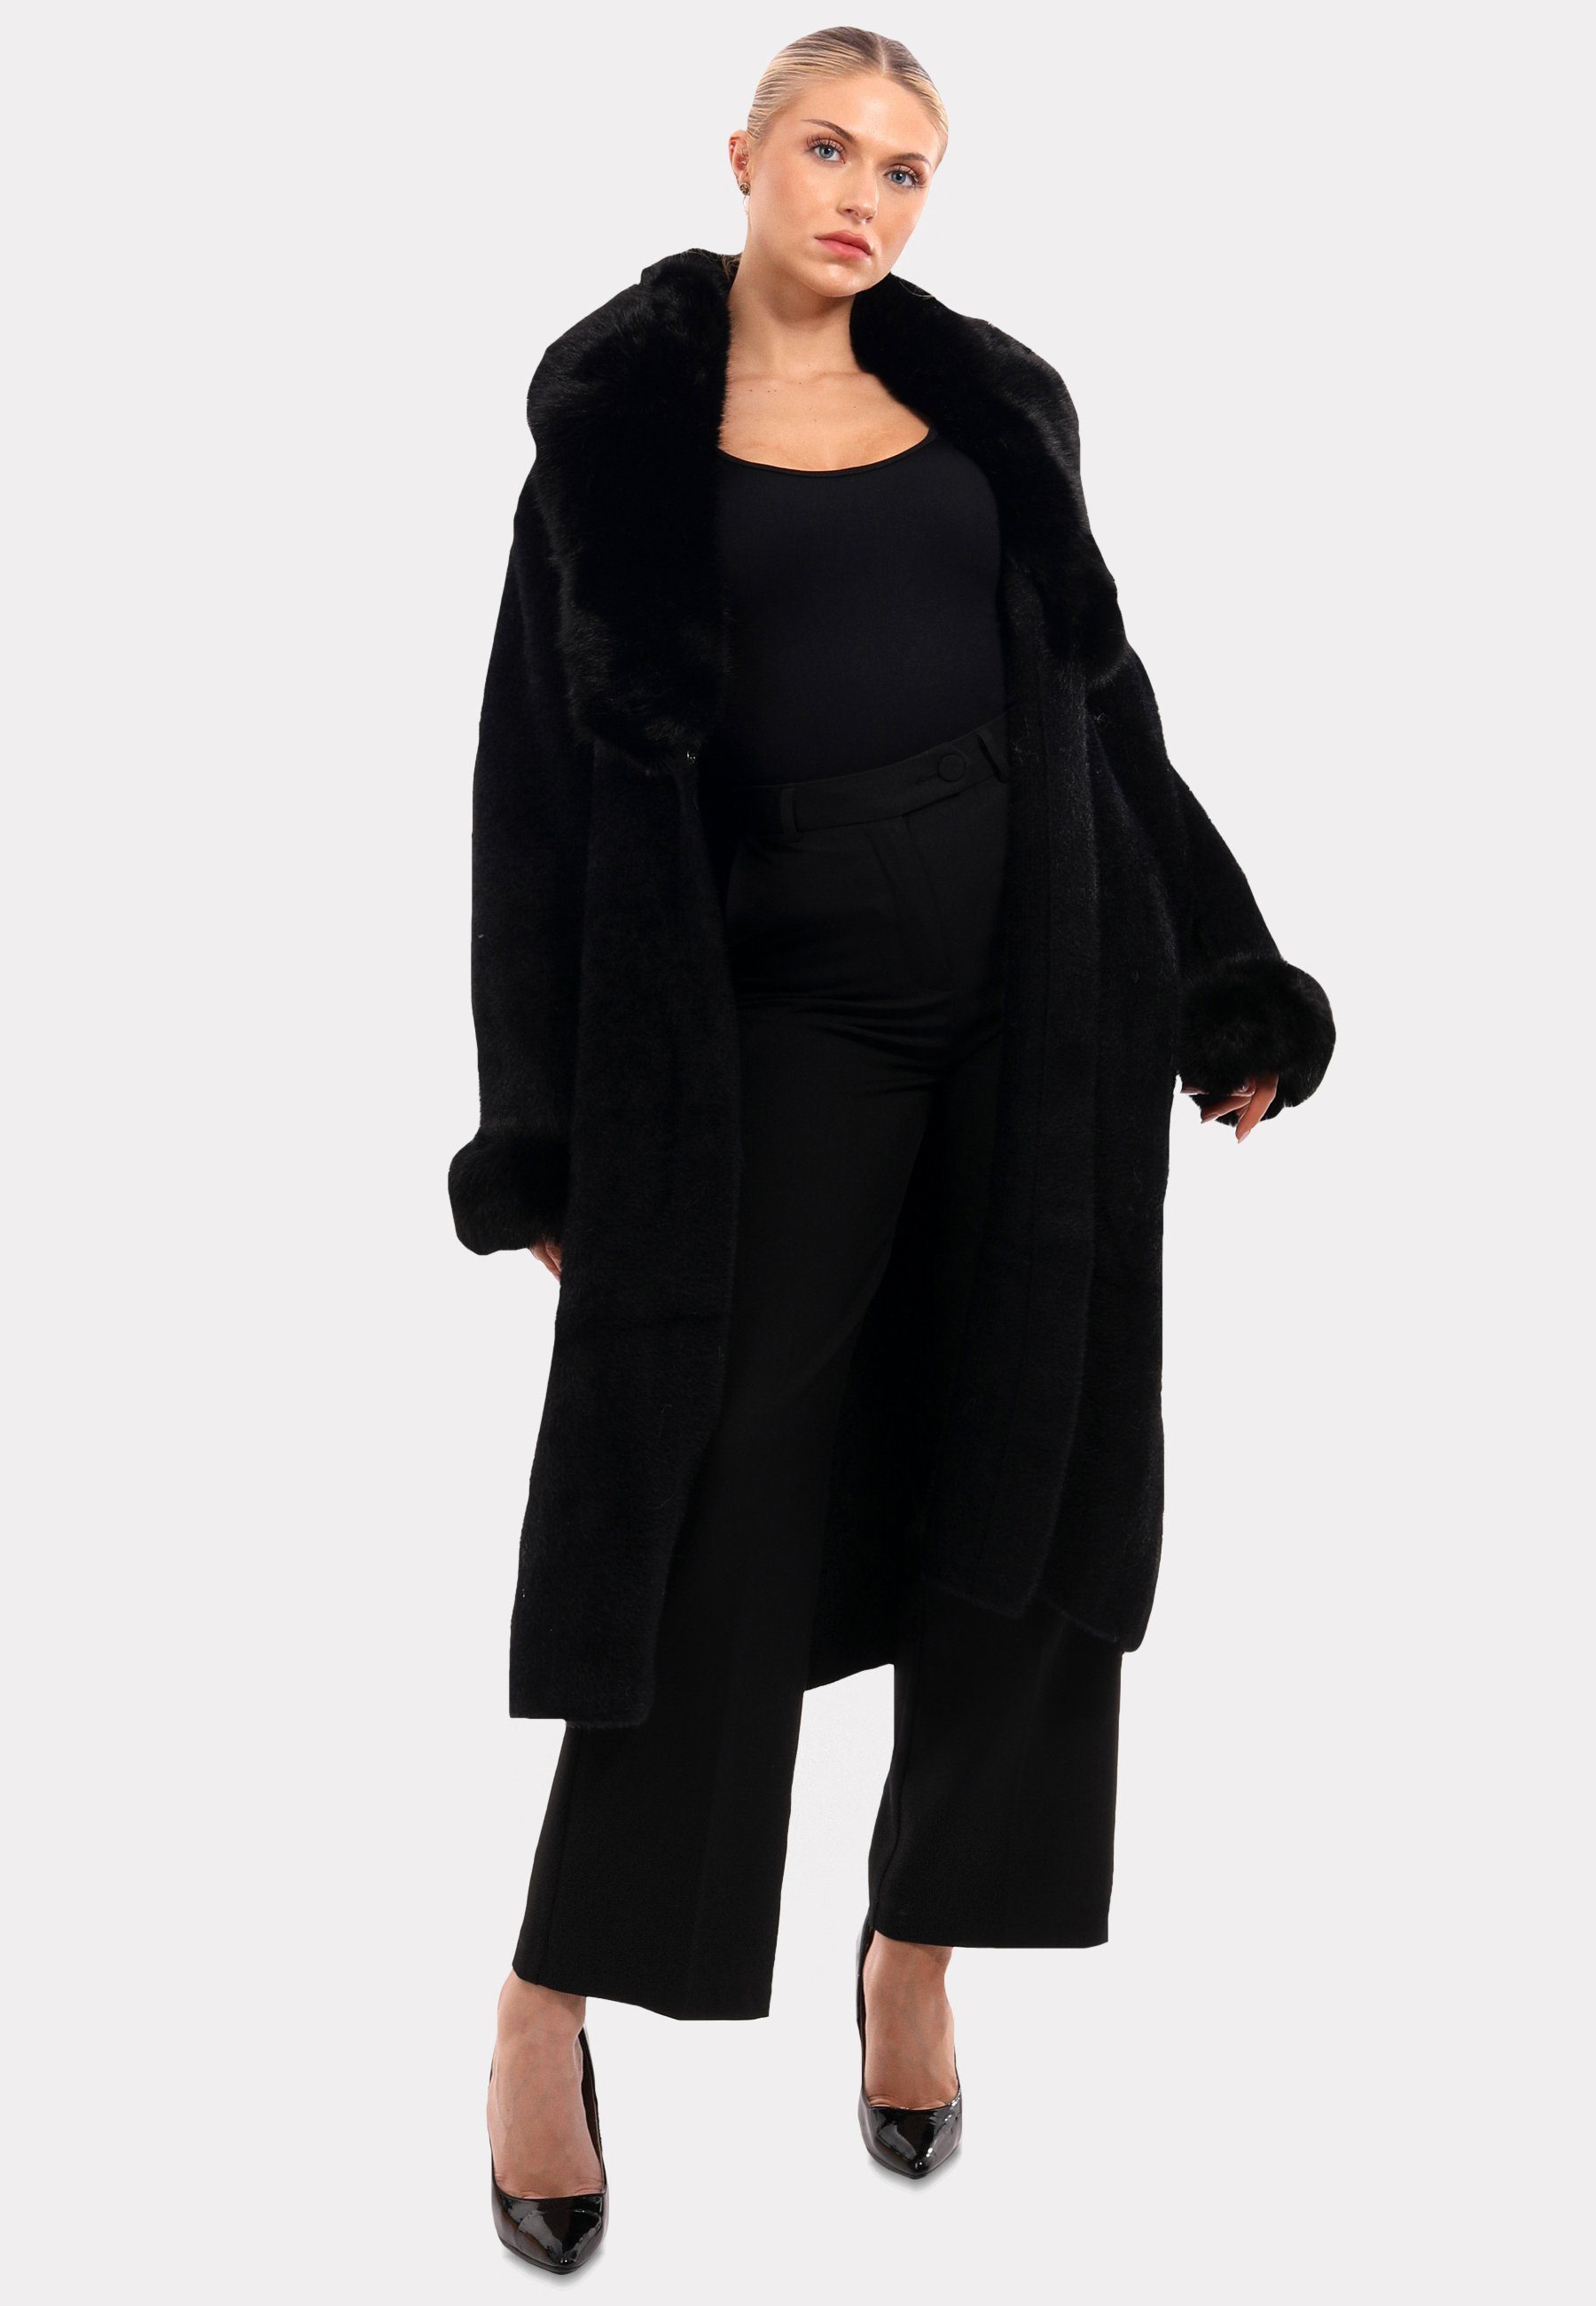 YC Fashion & Style Poncho "Exquisiter Mantel mit luxuriösem Kunstpelz-Details" schwarz